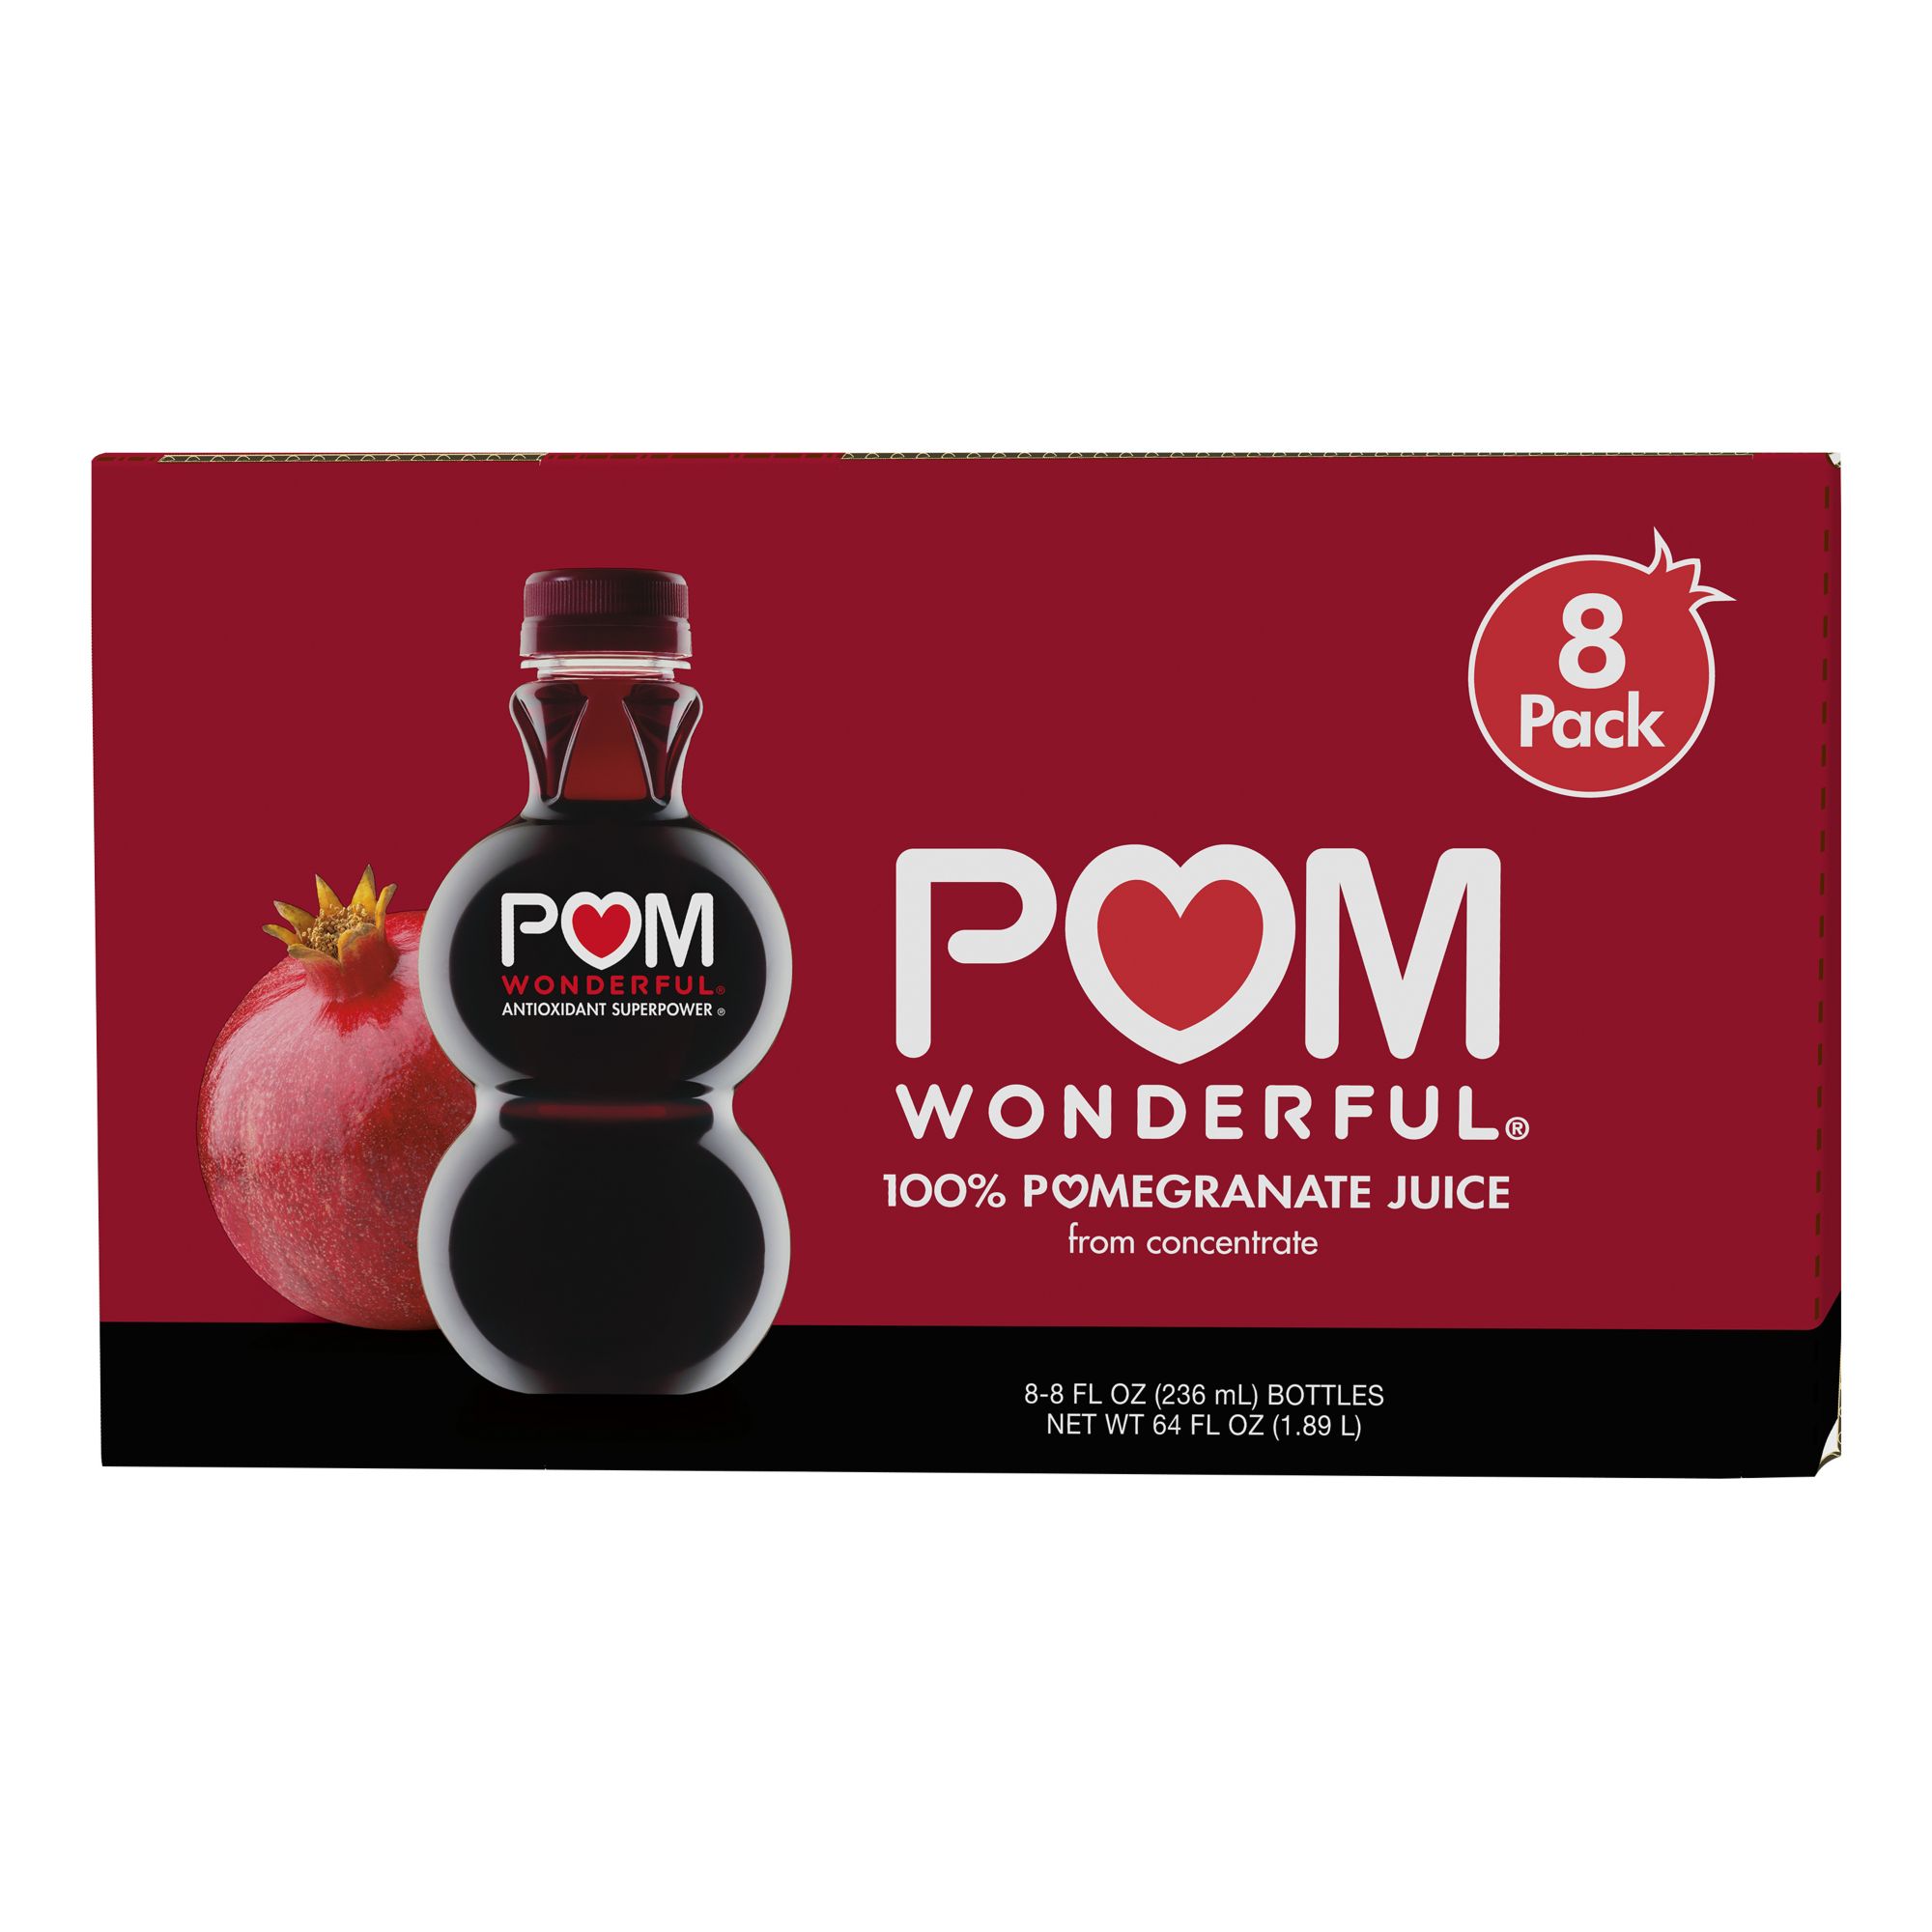 POM Wonderful – POM Products